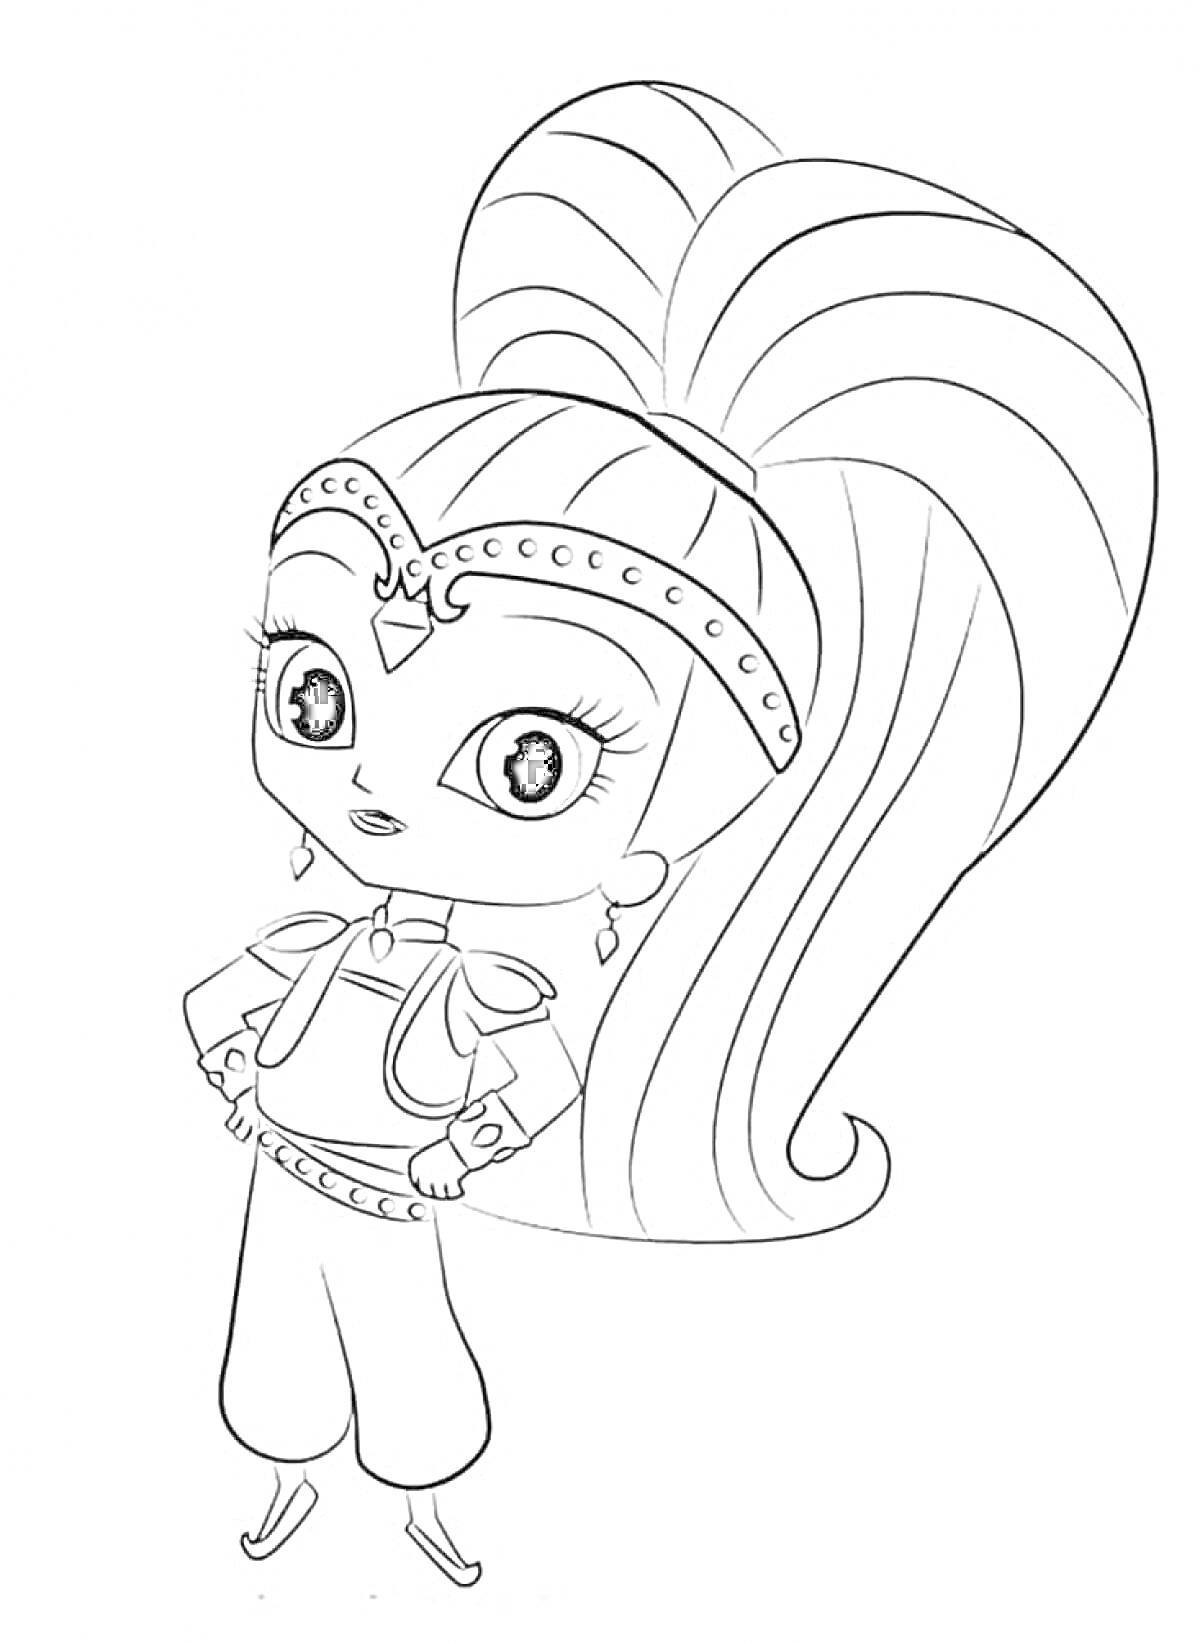 Раскраска Девочка-джин с длинным хвостом на голове и браслетами на руках из мультфильма 